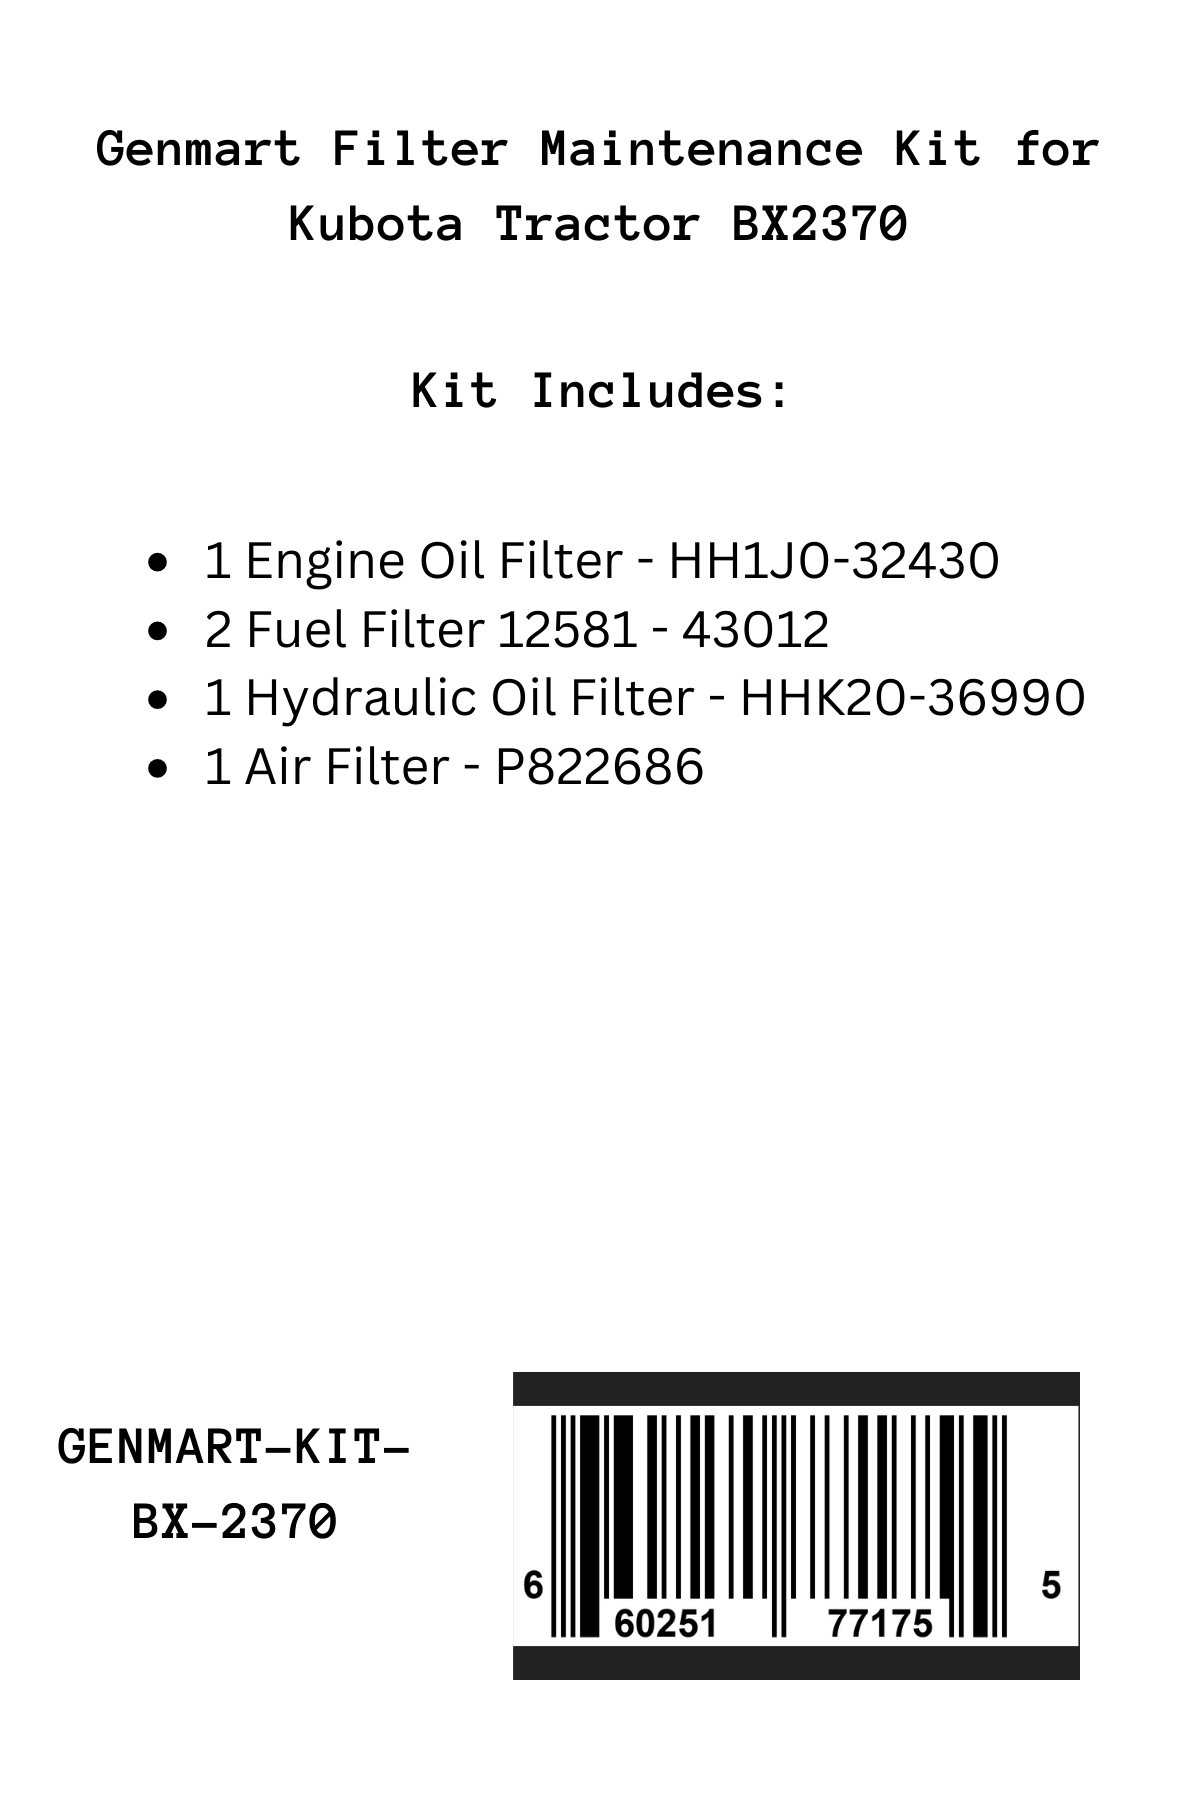 Genmart Maintenance Kit for Kubota Tractor BX-2370